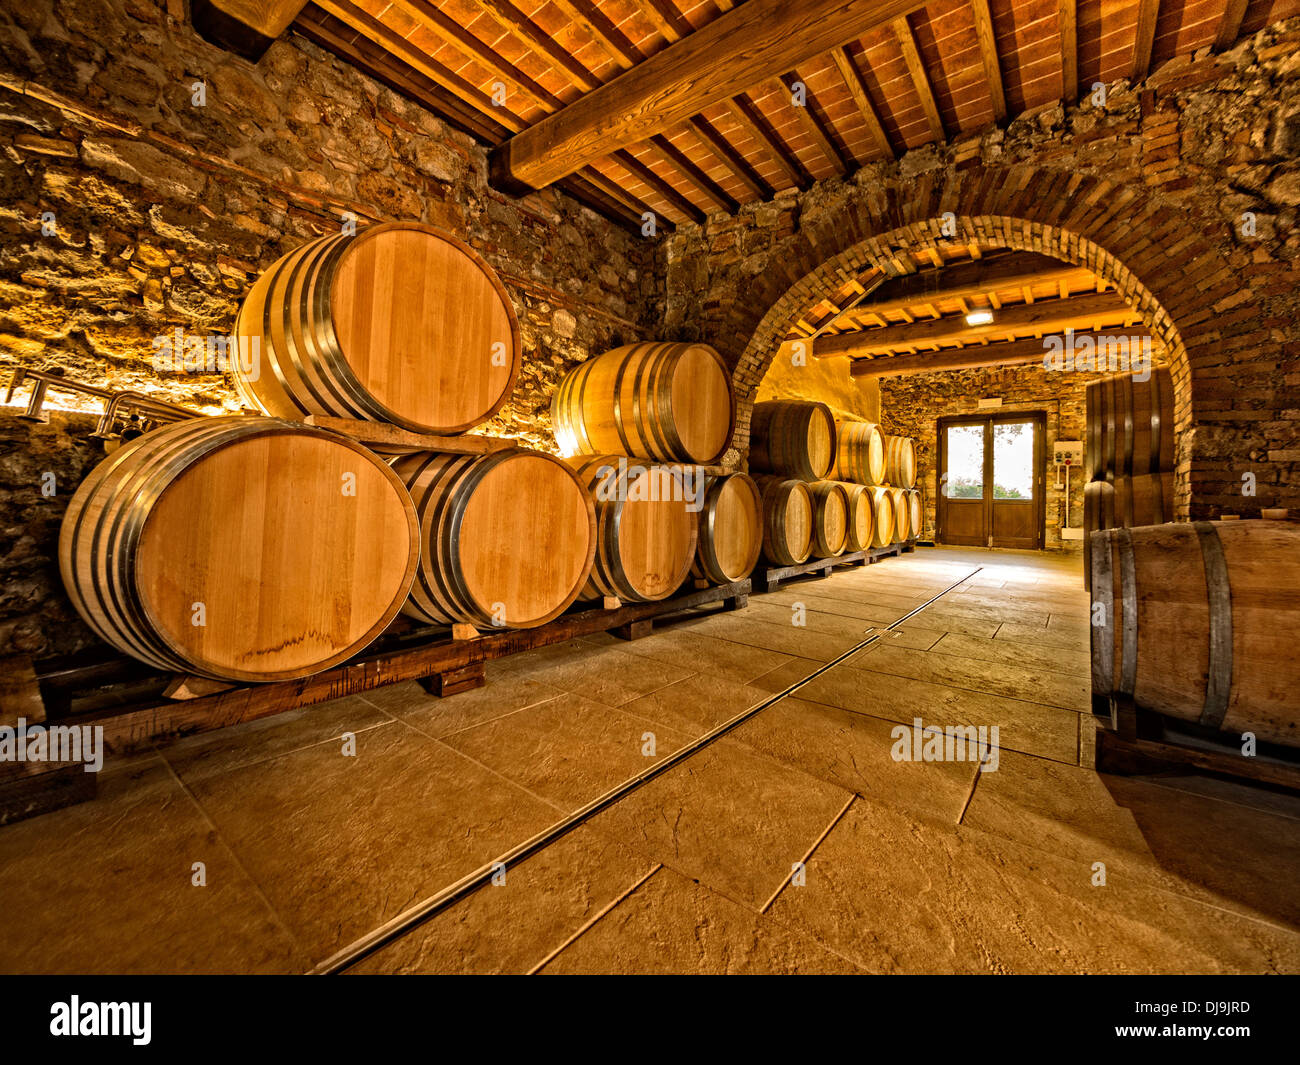 oak wine barrels in winery cellar Stock Photo